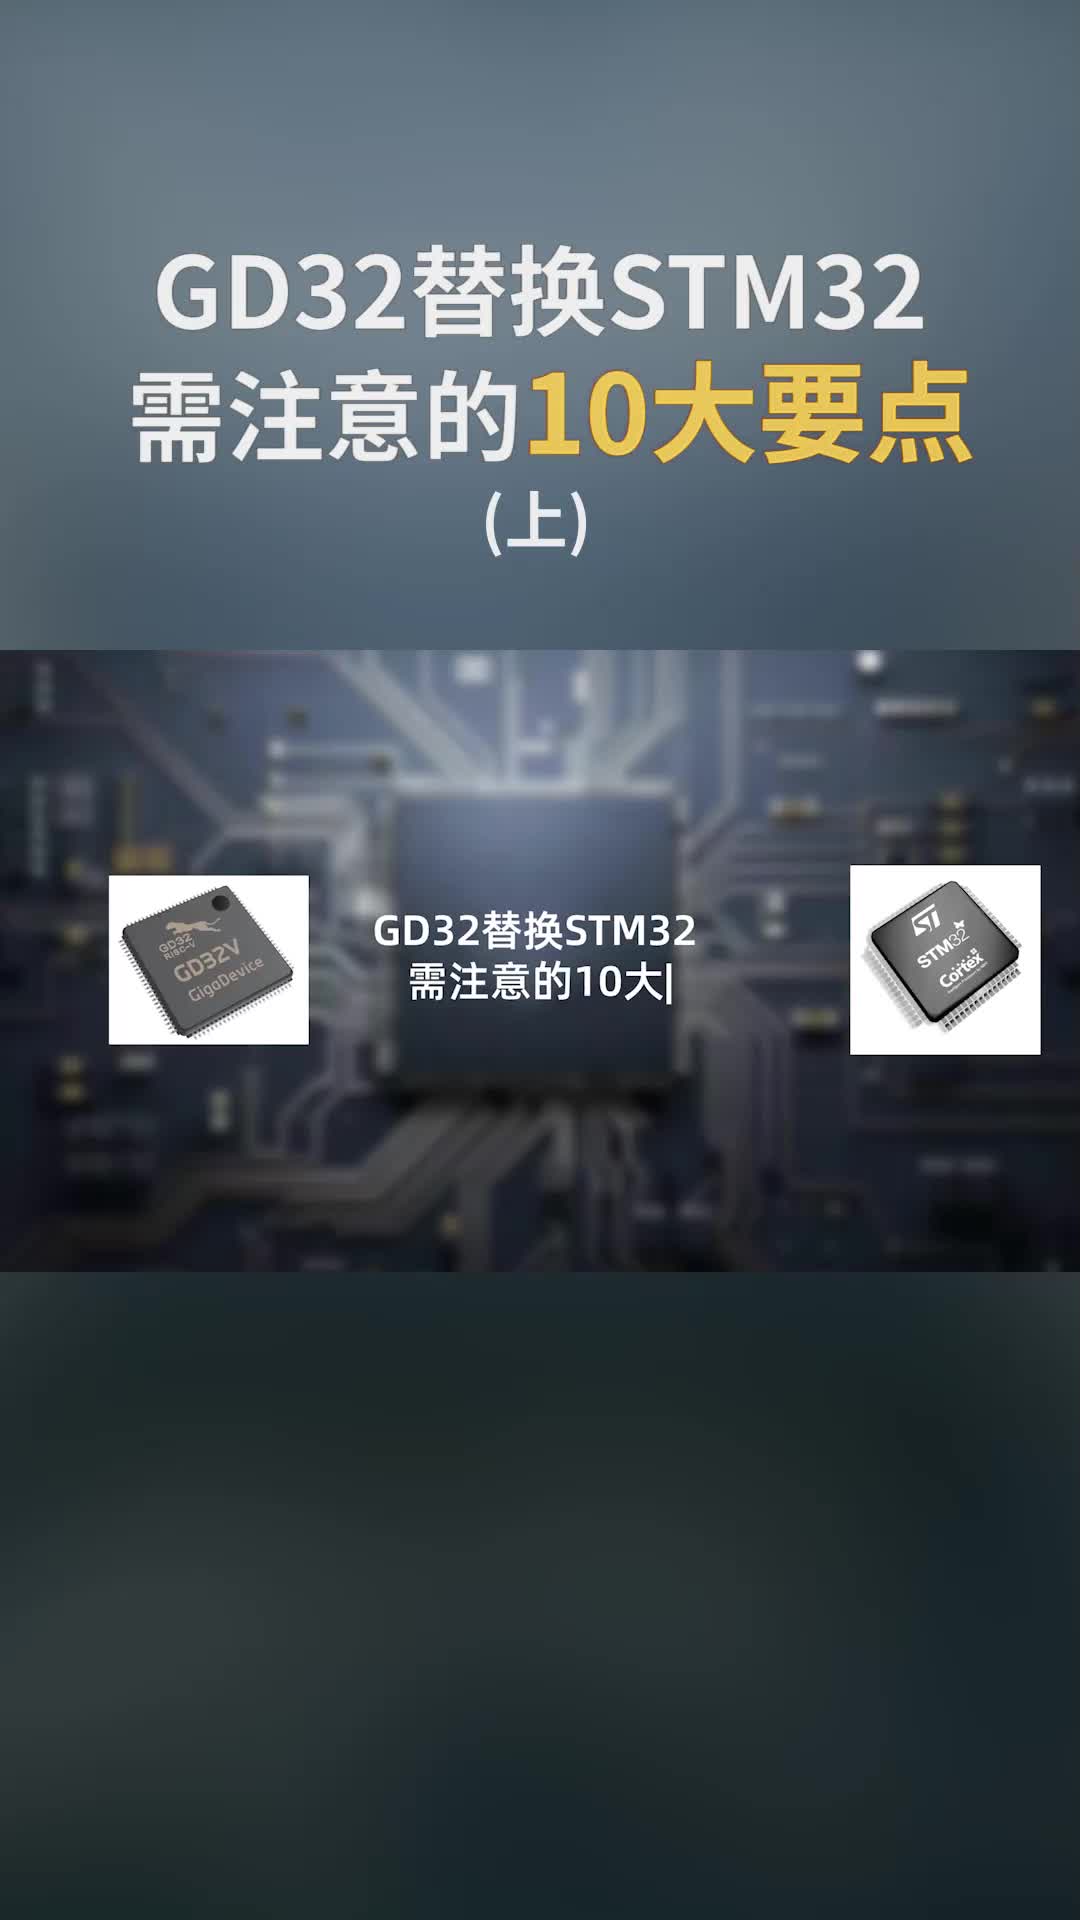  GD32替換STM32需注意的10大要點(diǎn)(上)@硬聲小助手